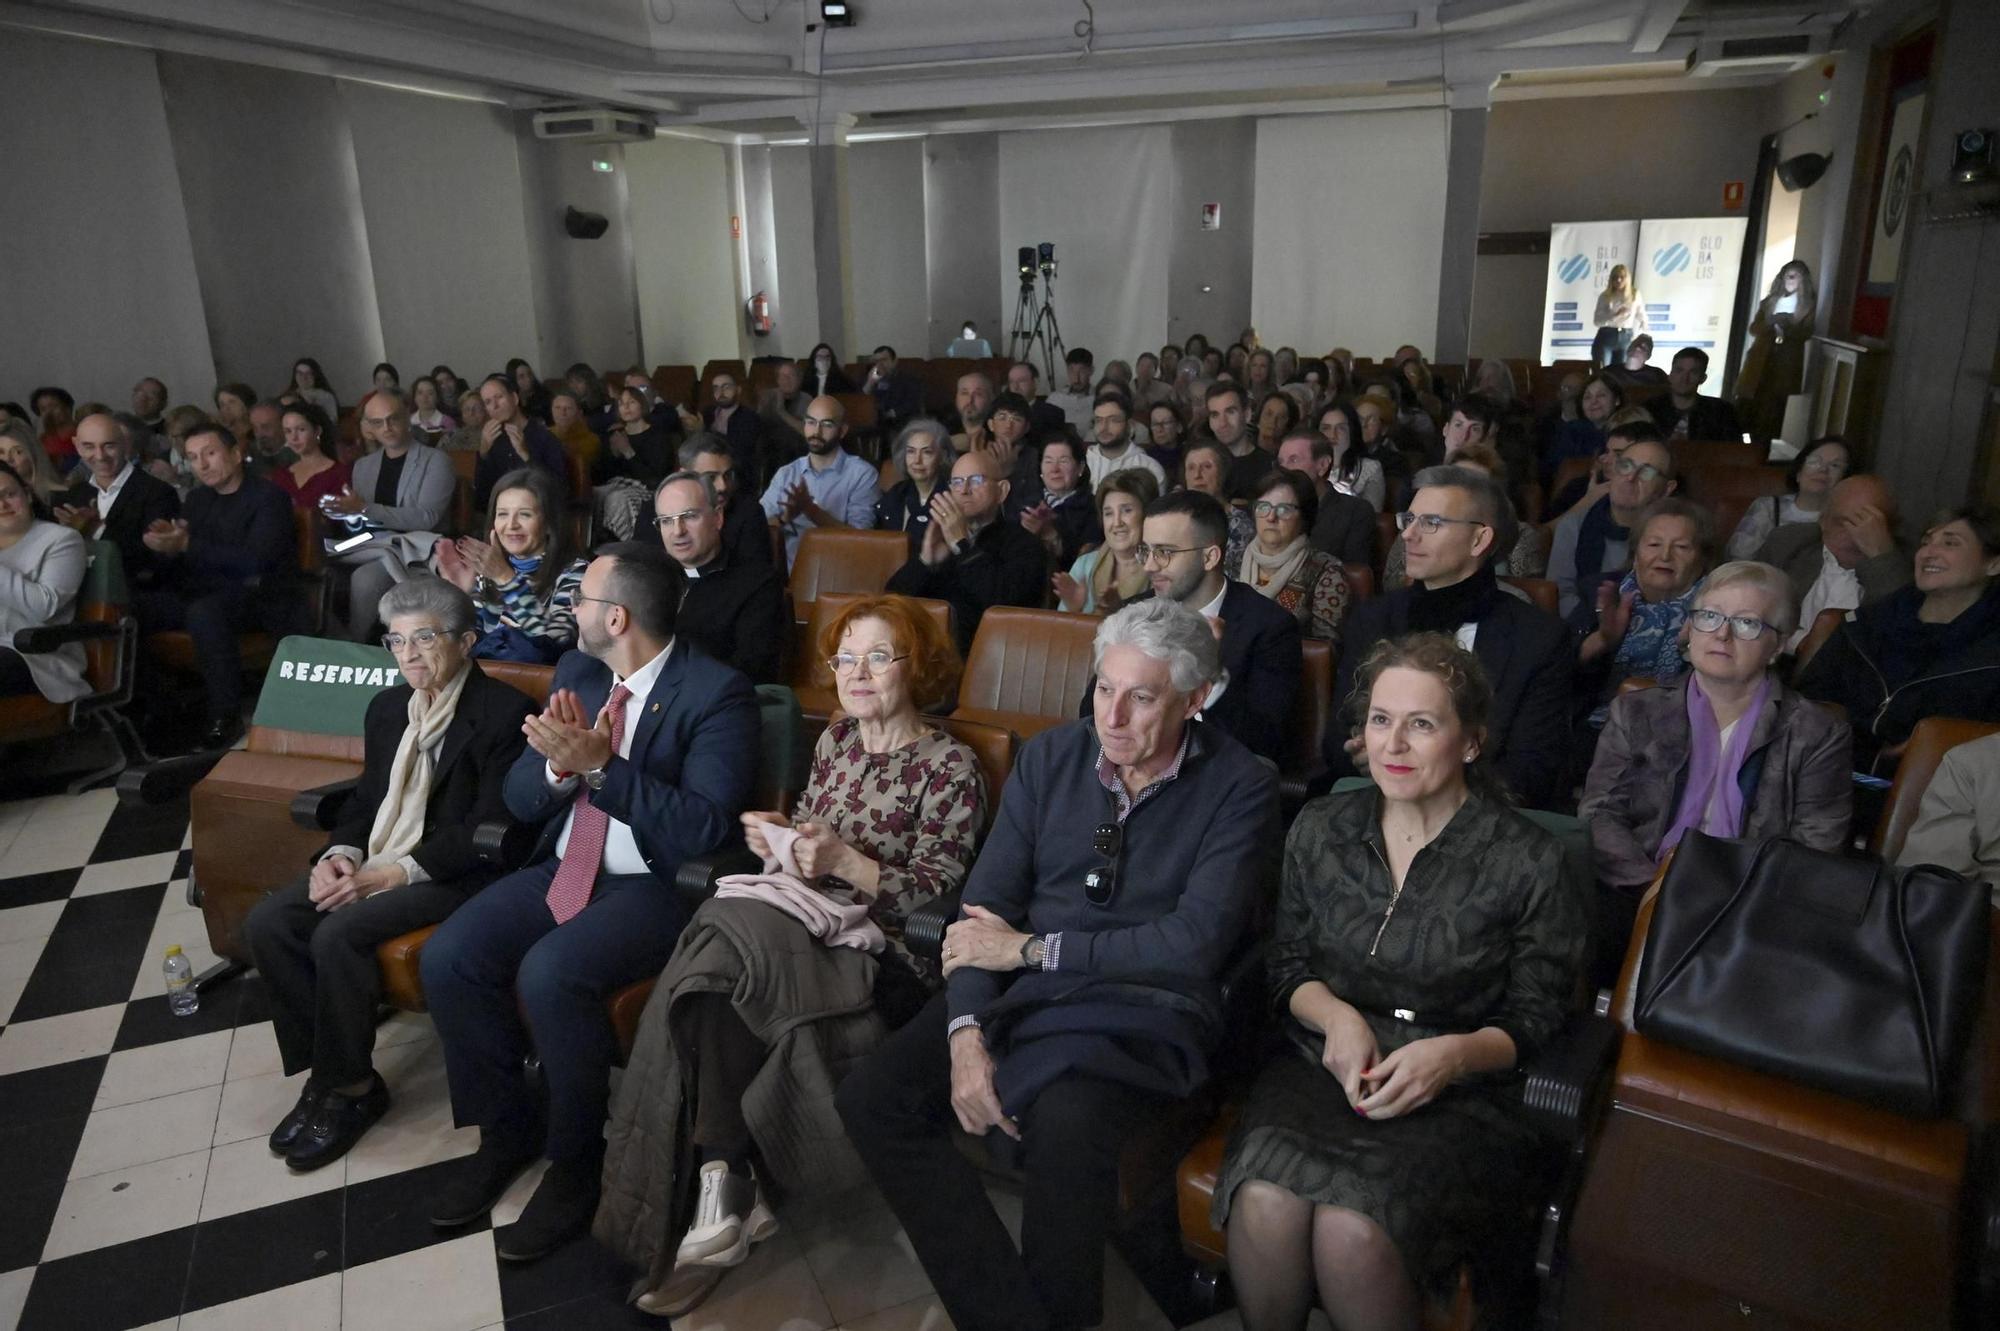 Las imágenes de la entrega de los Premios Globalis en Vila-real